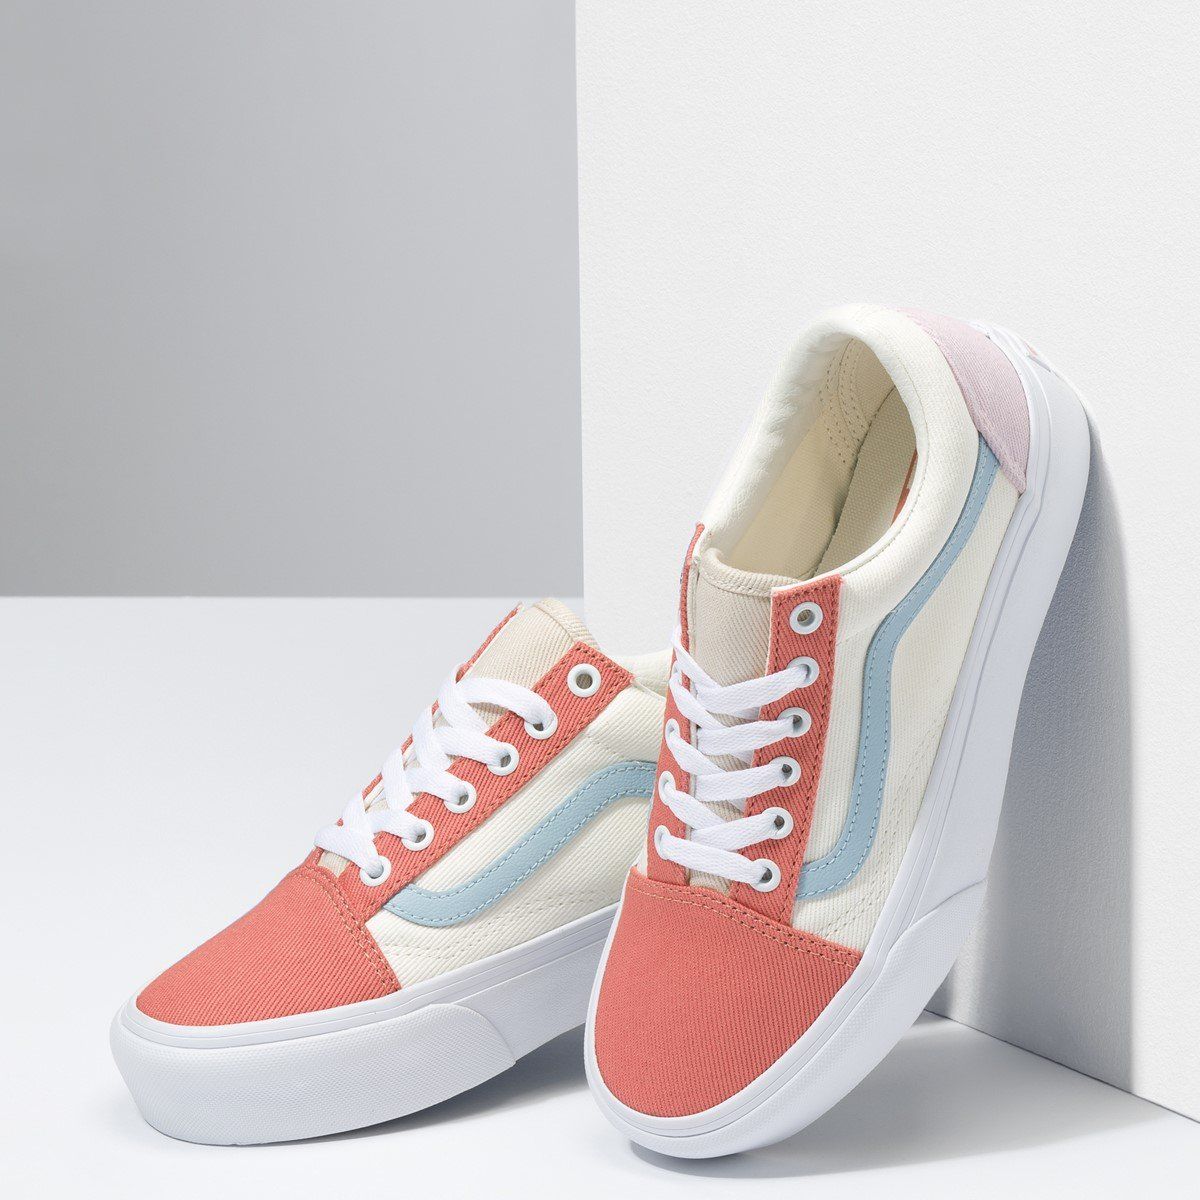 Size 38.5] Giày Vans Old Skool Platform Twill sneakers in pastel mult – YaSa